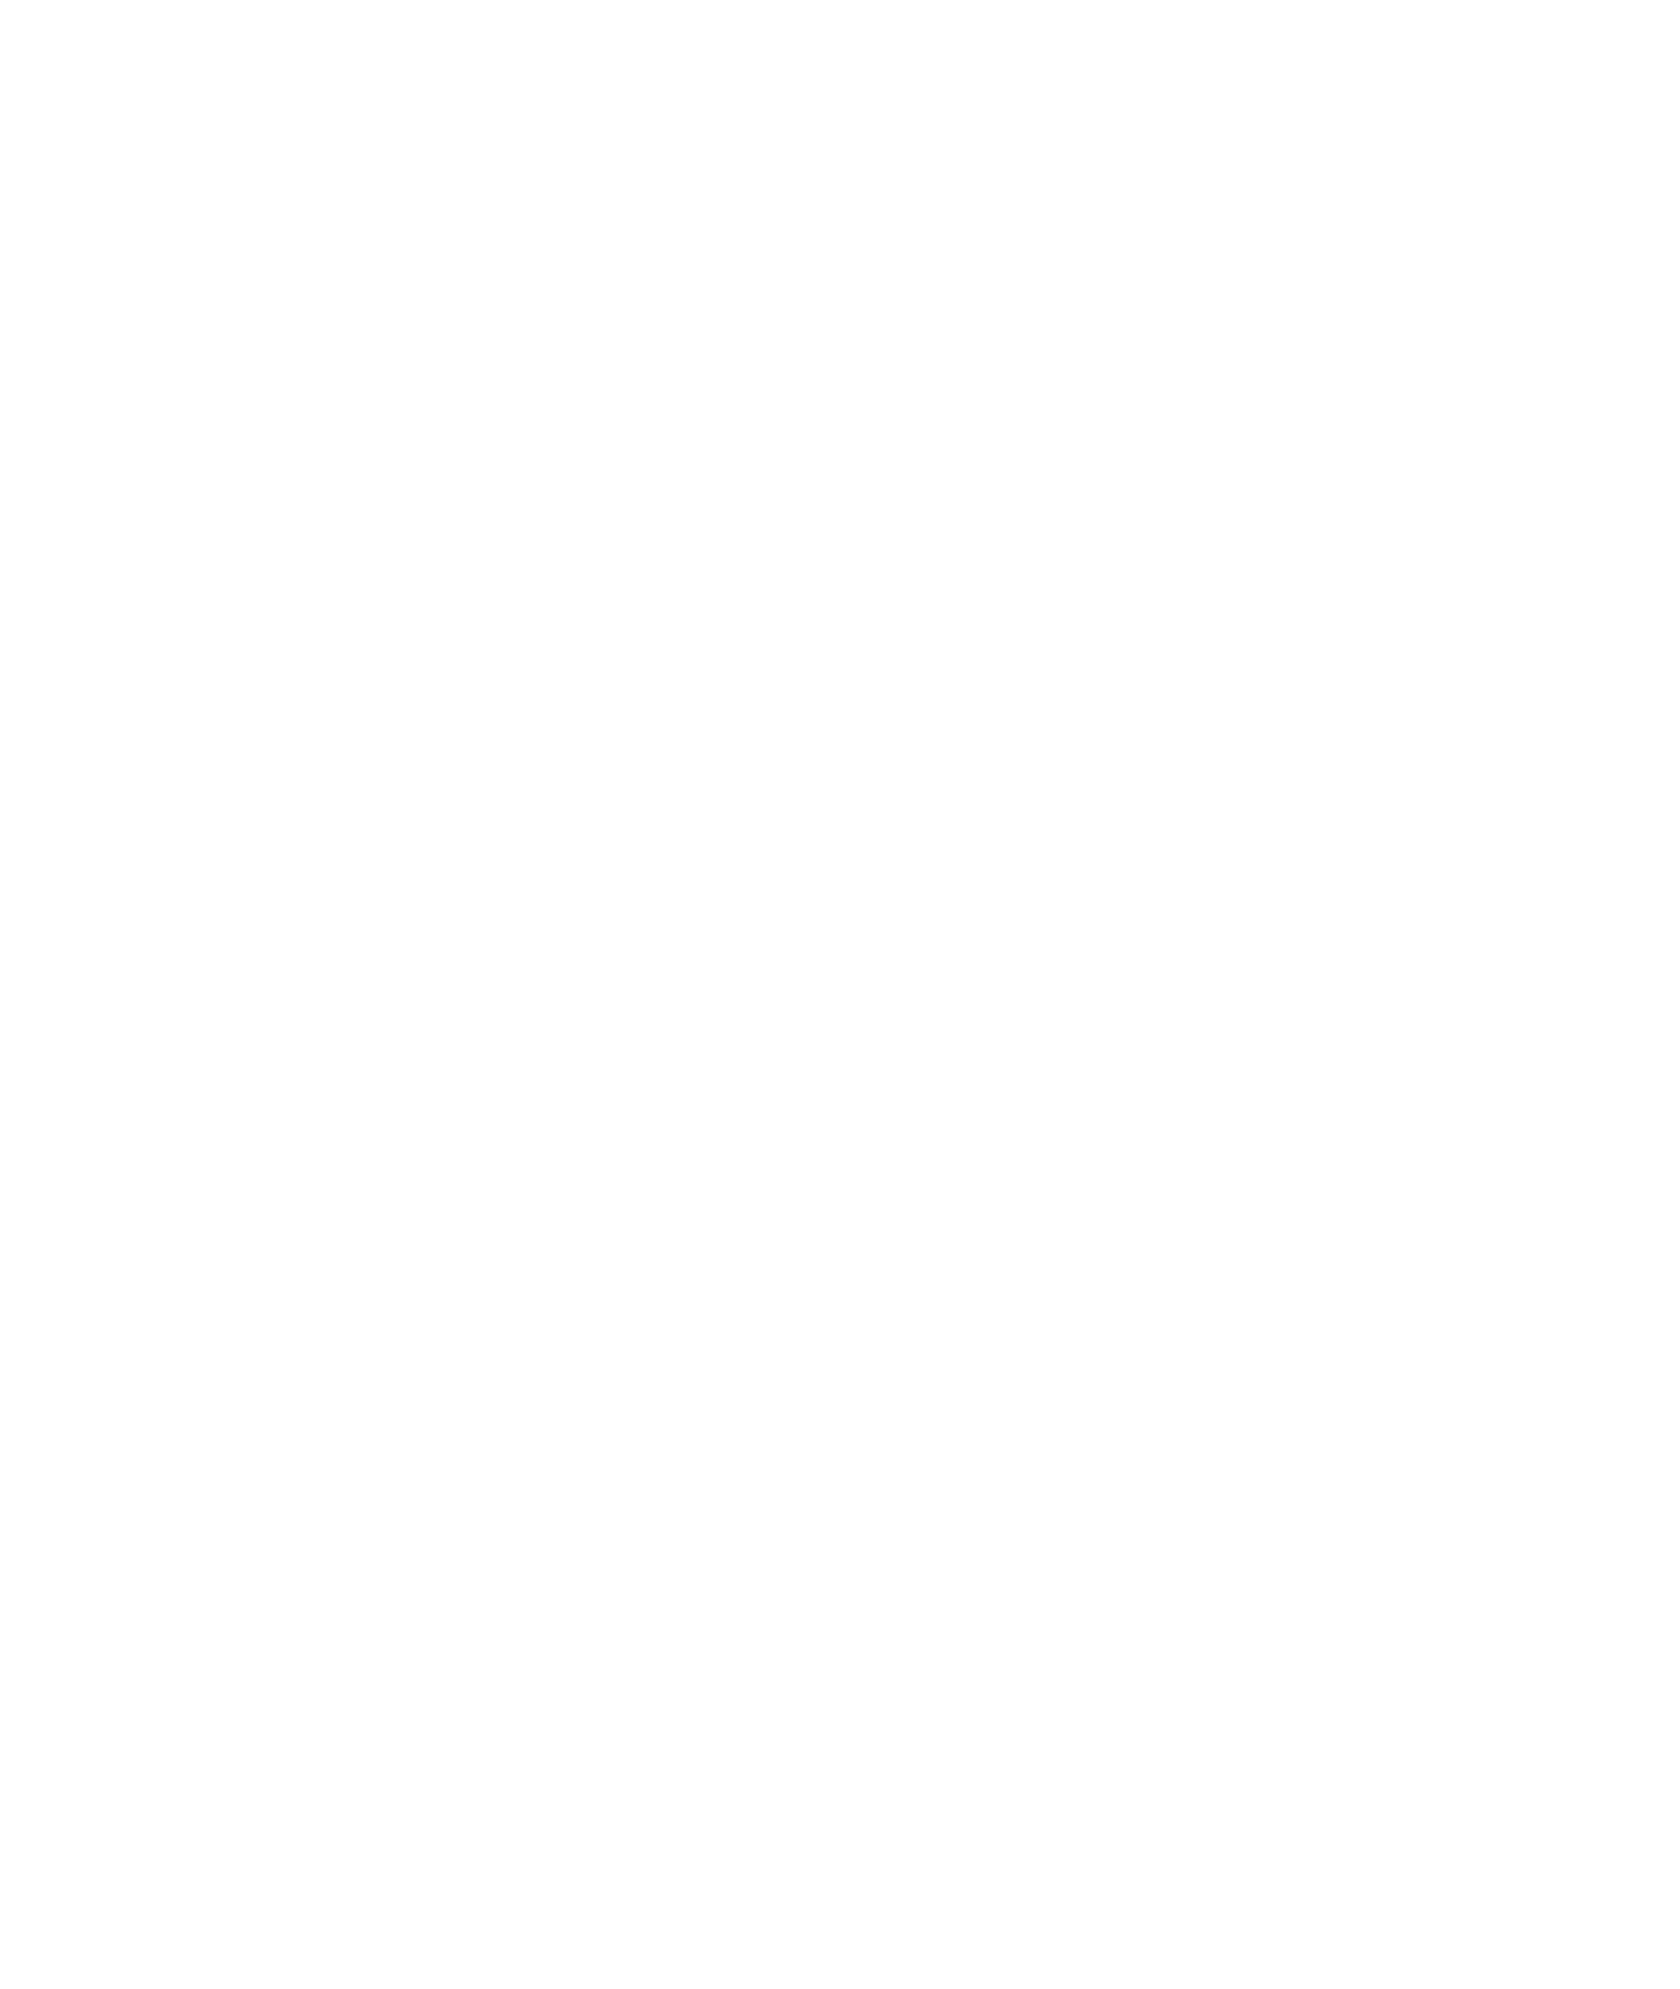 Лот №2: Картина «Утро в березовой аллее» (Баковка)». Холст, масло, 40х50 см, 2013 г. (автор: Эсмонд М.). Начальная цена: 45 000 руб.